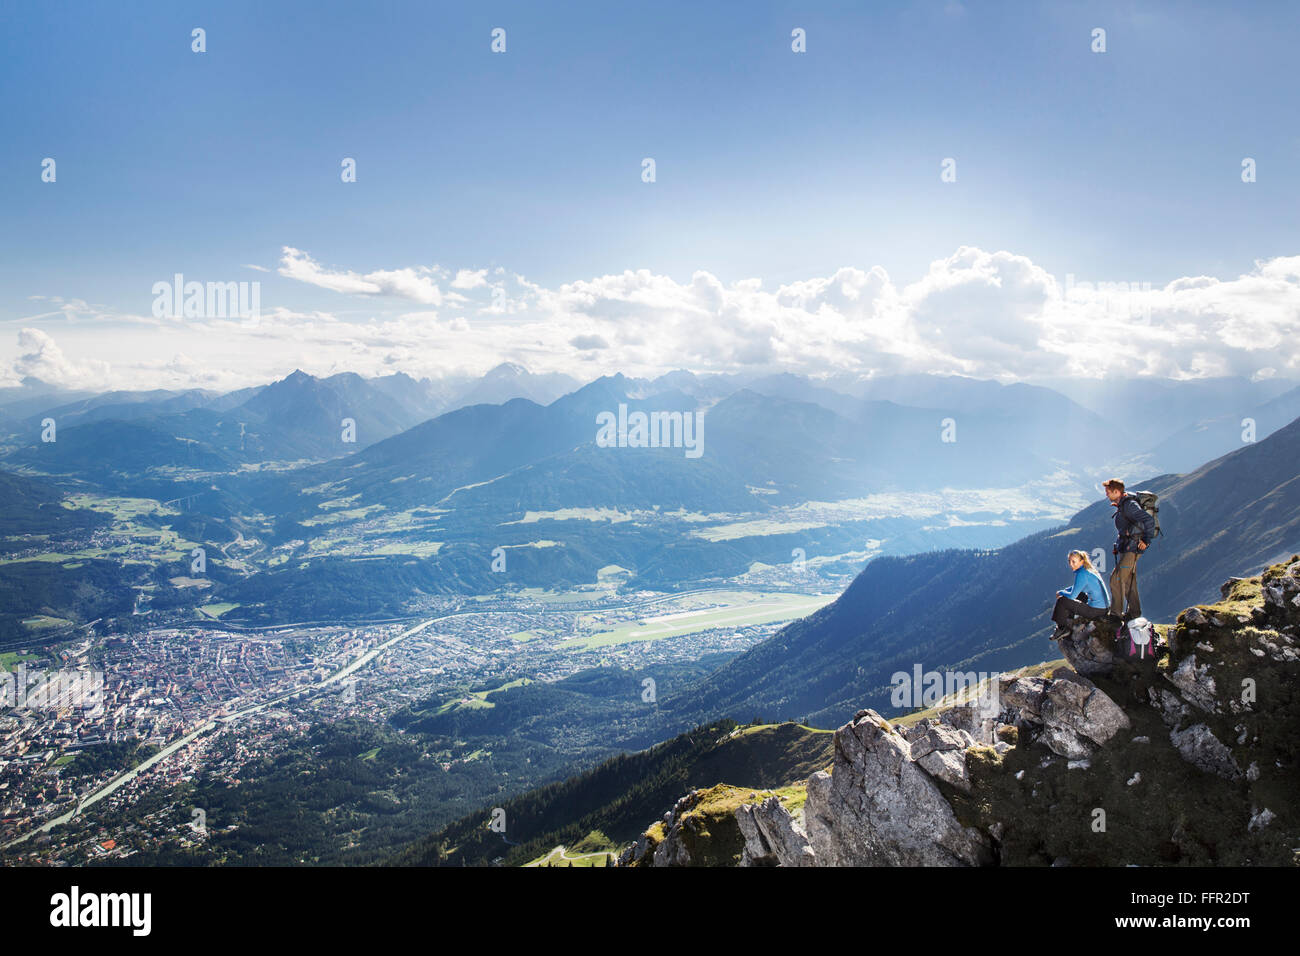 Les randonneurs, hommes et femmes prennent une pause sur un sentier de montagne, Goetheweg, Karwendel, Innsbruck, Tyrol, Autriche Banque D'Images